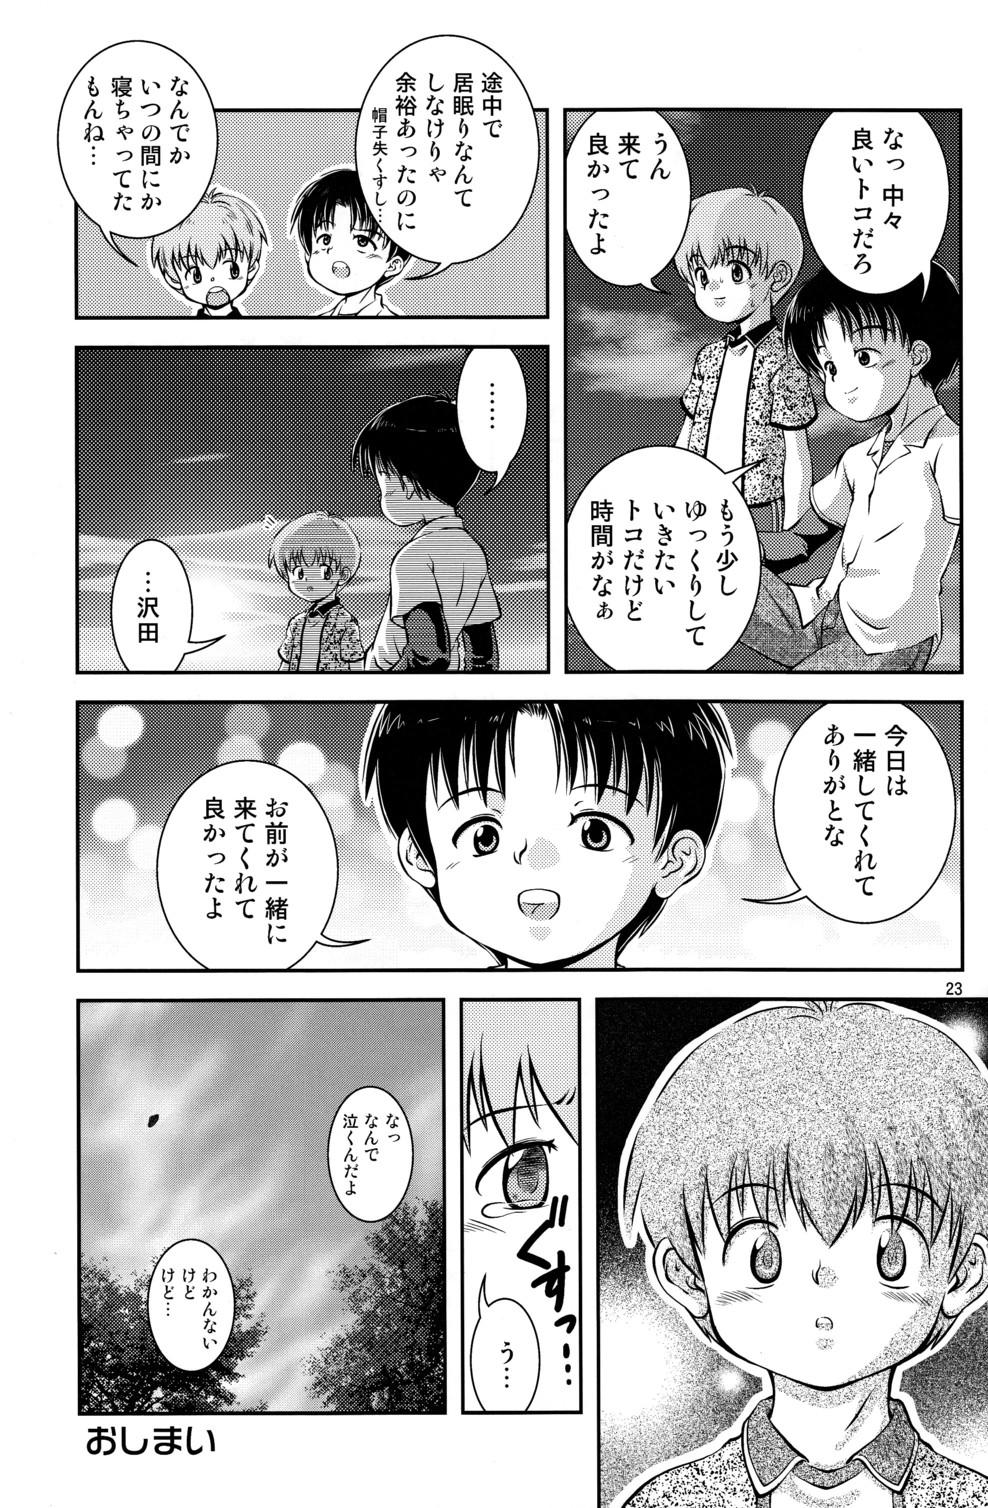 Pasivo Kimi to Miru Hoshi Hermosa - Page 24